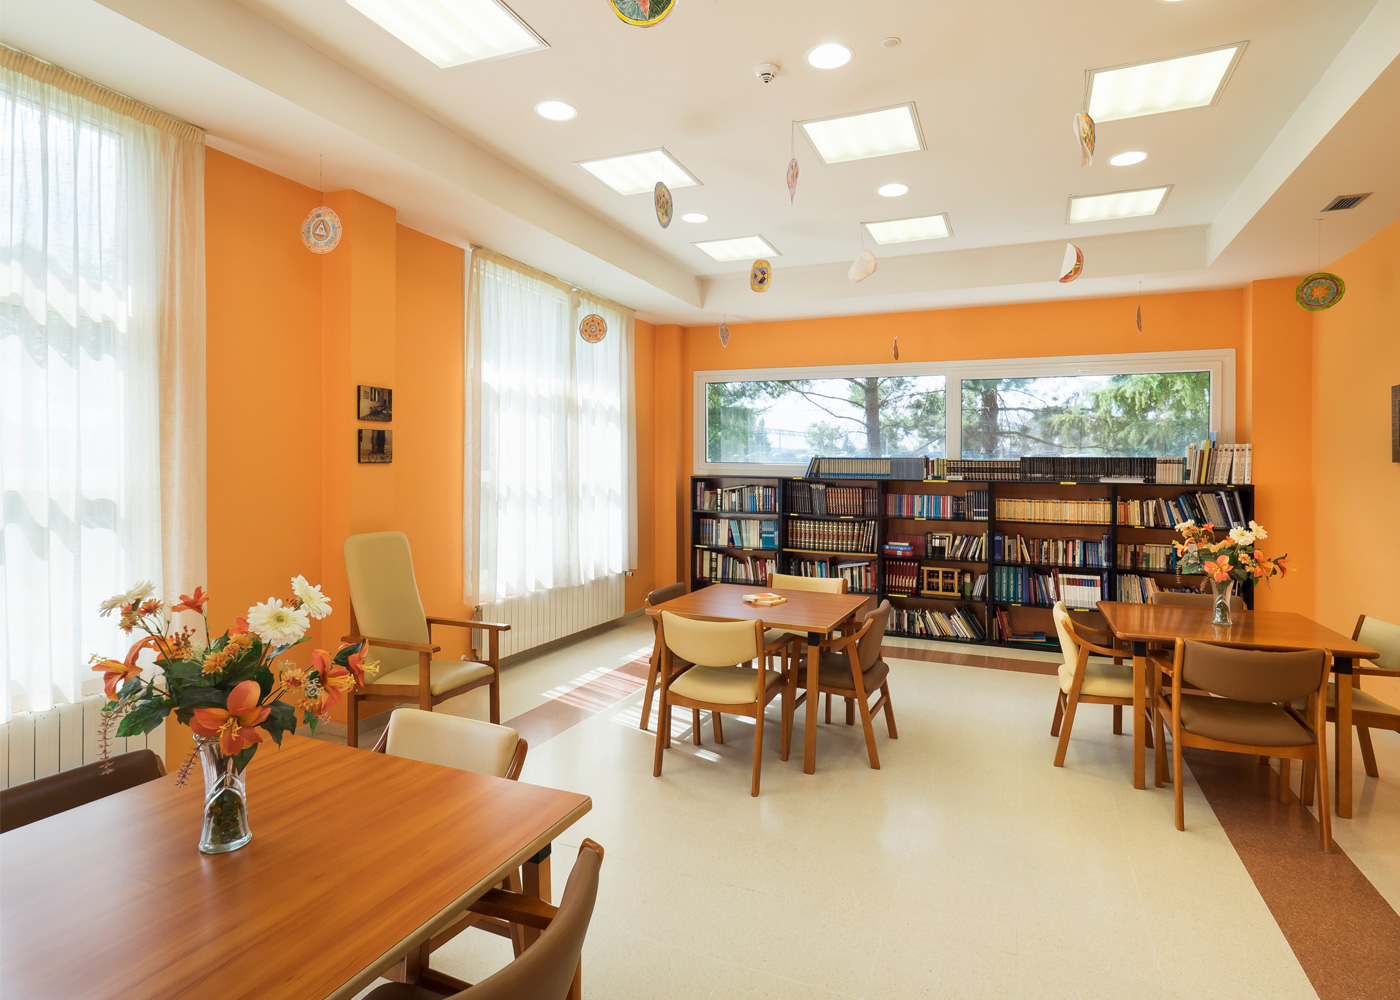 Biblioteca del centro residencial Baño Salud con varias sillas, mesas y librerías